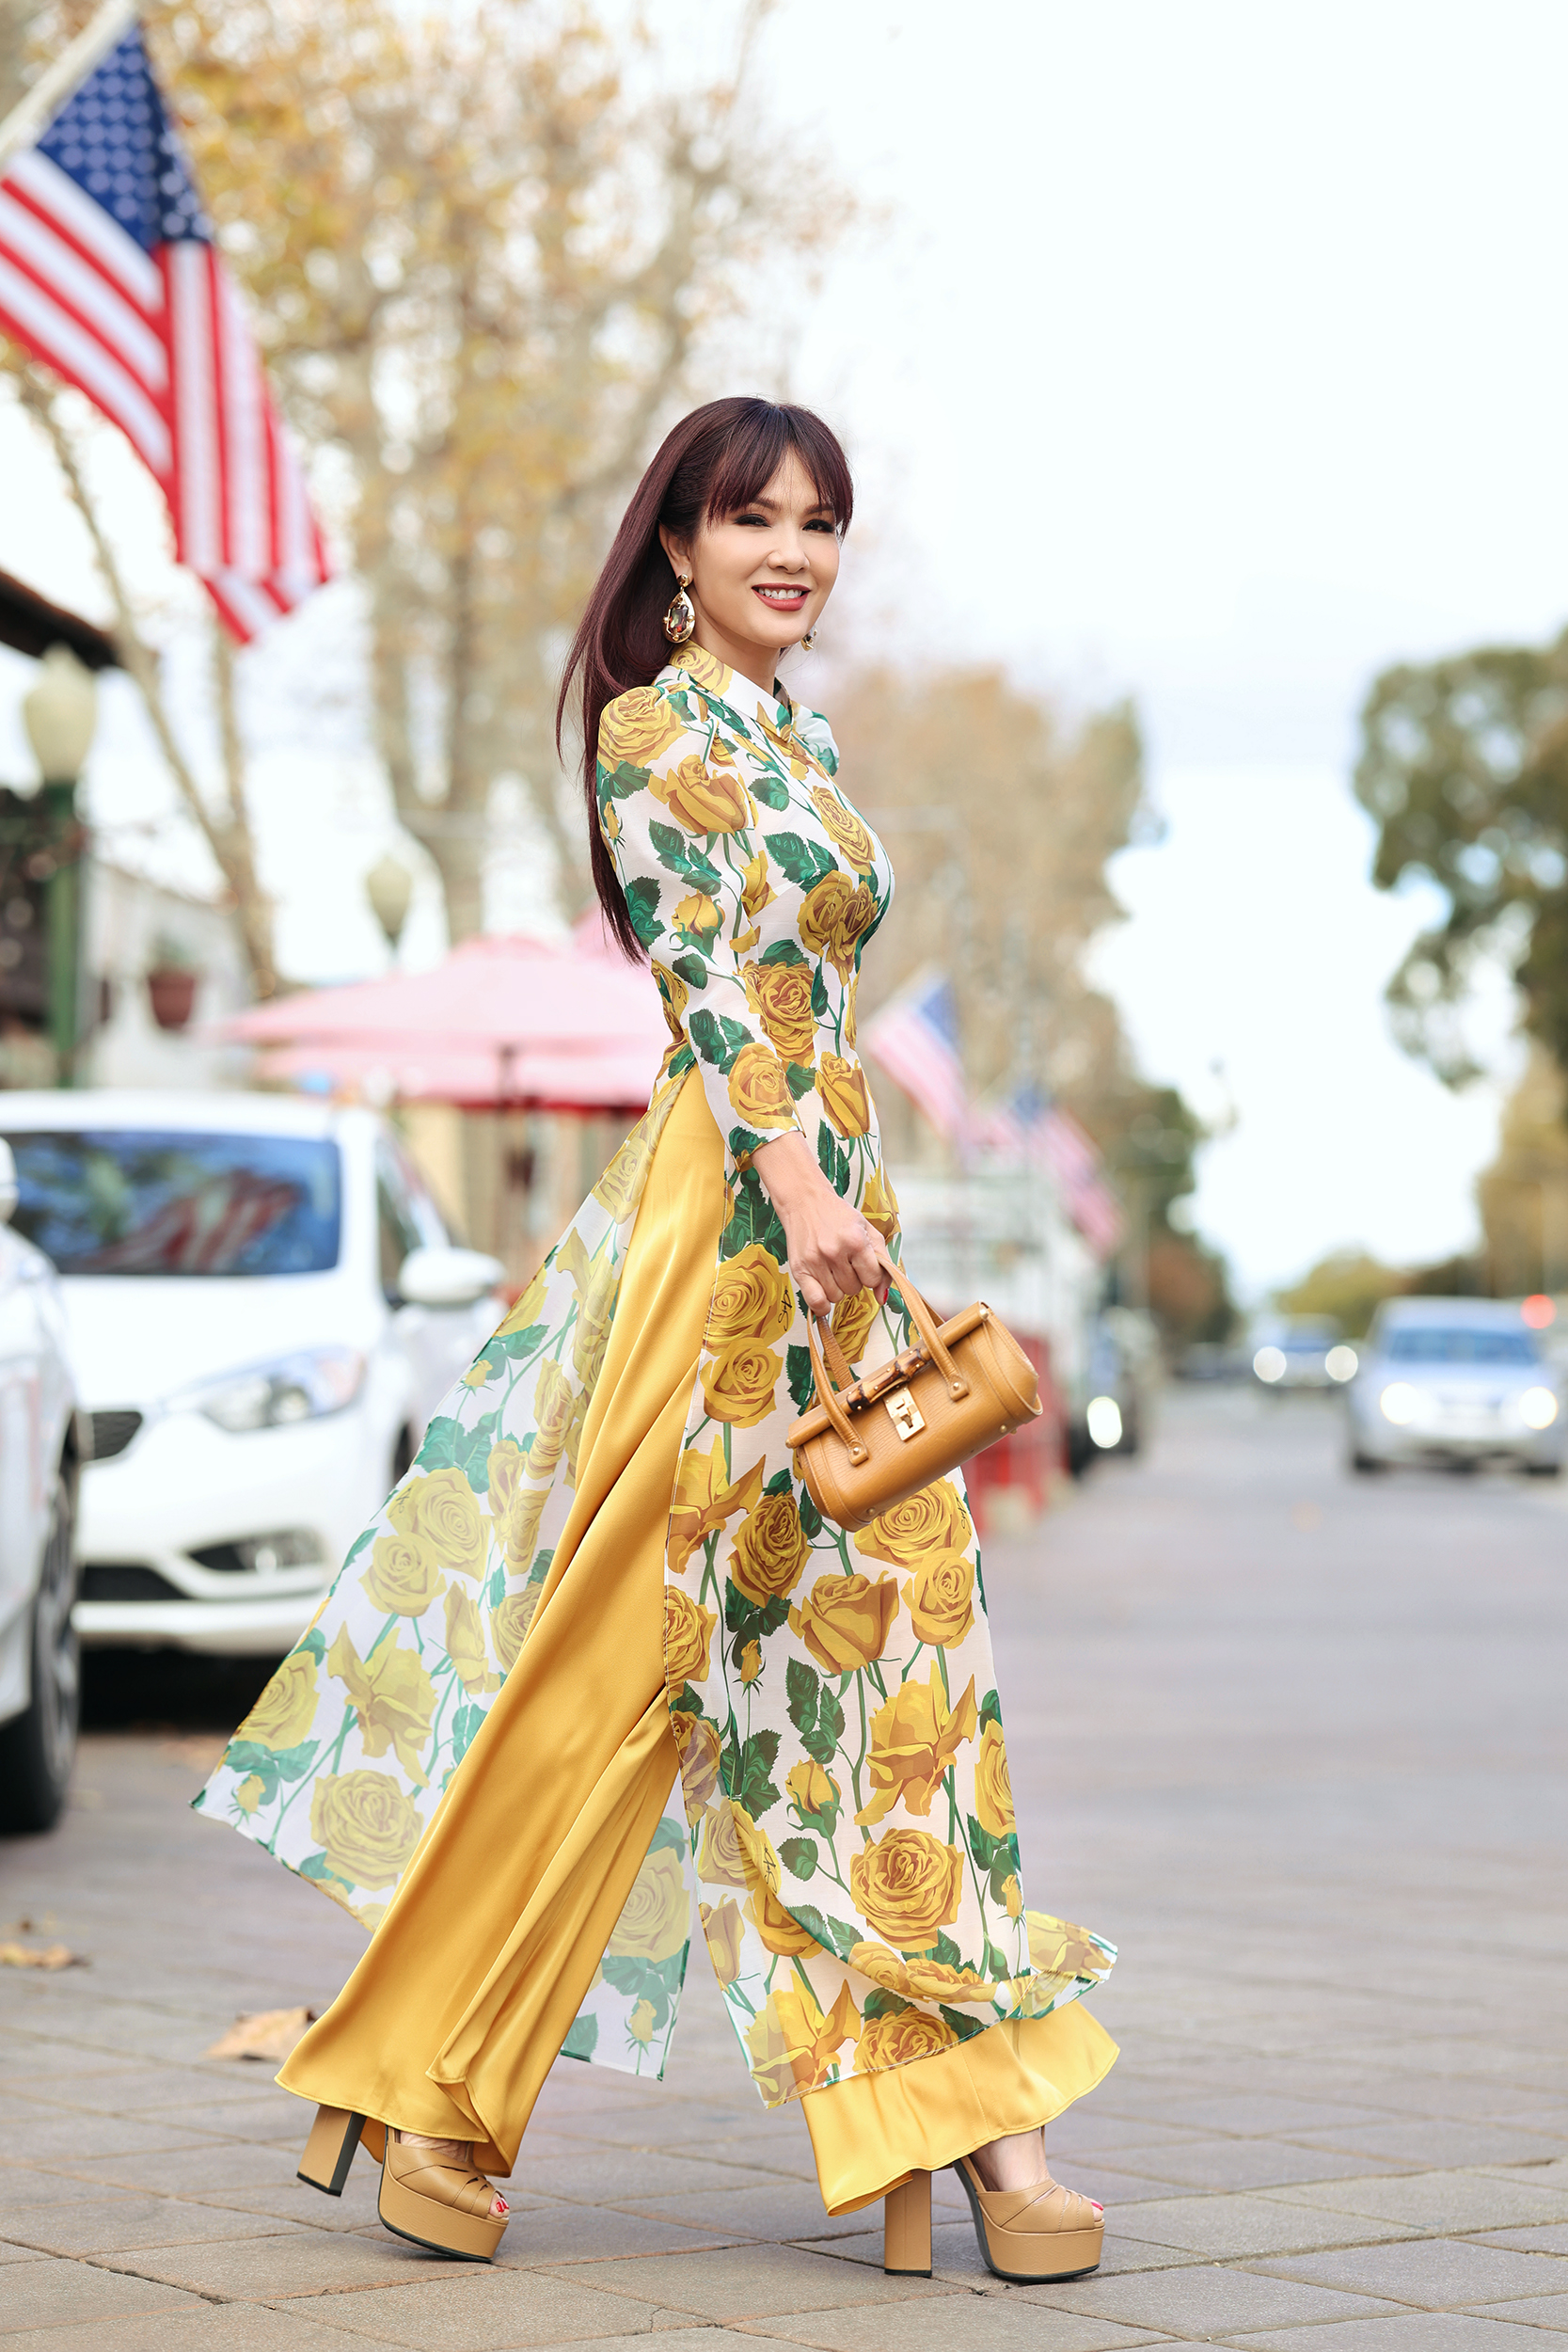 Hoa hậu Ngọc Hân với ý tưởng kết hợp văn hóa Nhật Bản và Việt Nam trong tà áo dài - ảnh 12